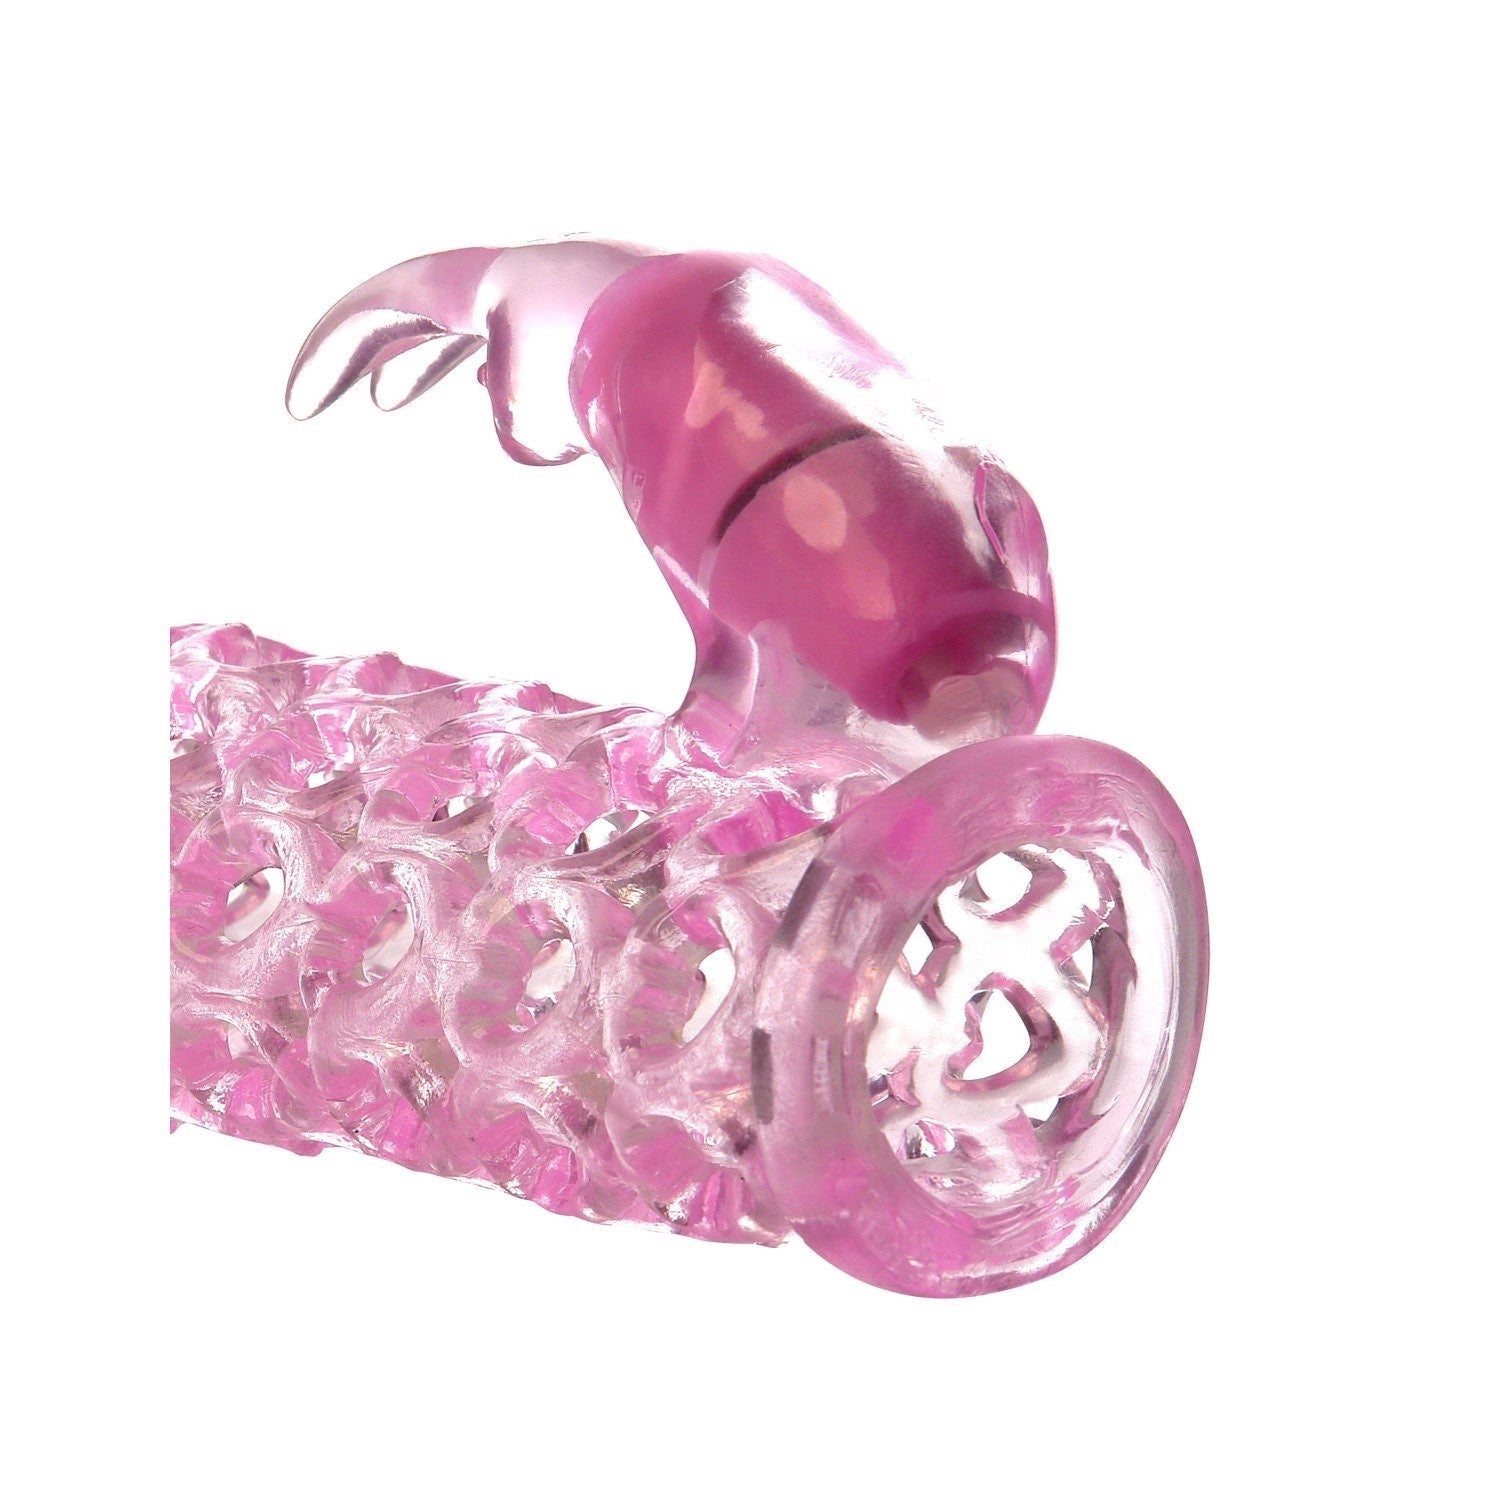 奇幻张力 振动情侣笼 - 粉色阴茎延长套带振动兔子阴蒂刺激器 by Pipedream